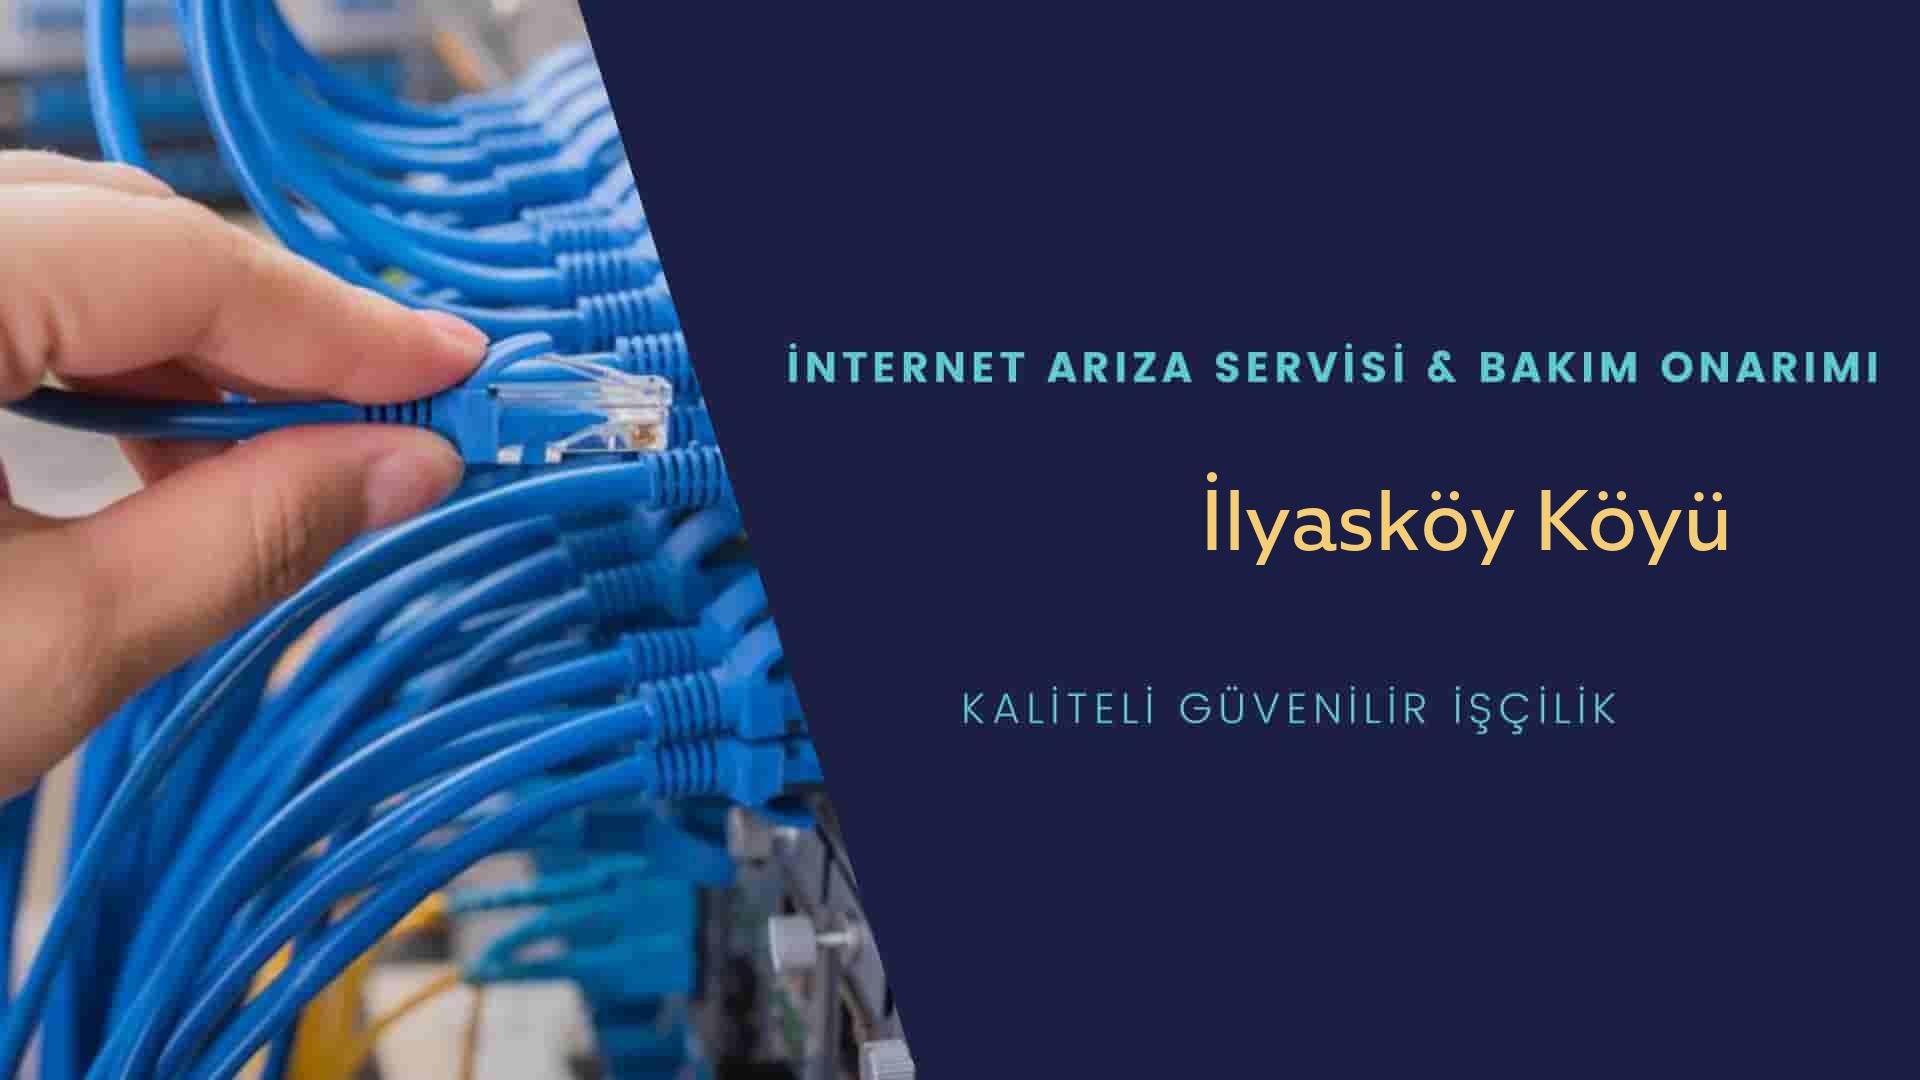 İlyasköy Köyü internet kablosu çekimi yapan yerler veya elektrikçiler mi? arıyorsunuz doğru yerdesiniz o zaman sizlere 7/24 yardımcı olacak profesyonel ustalarımız bir telefon kadar yakındır size.